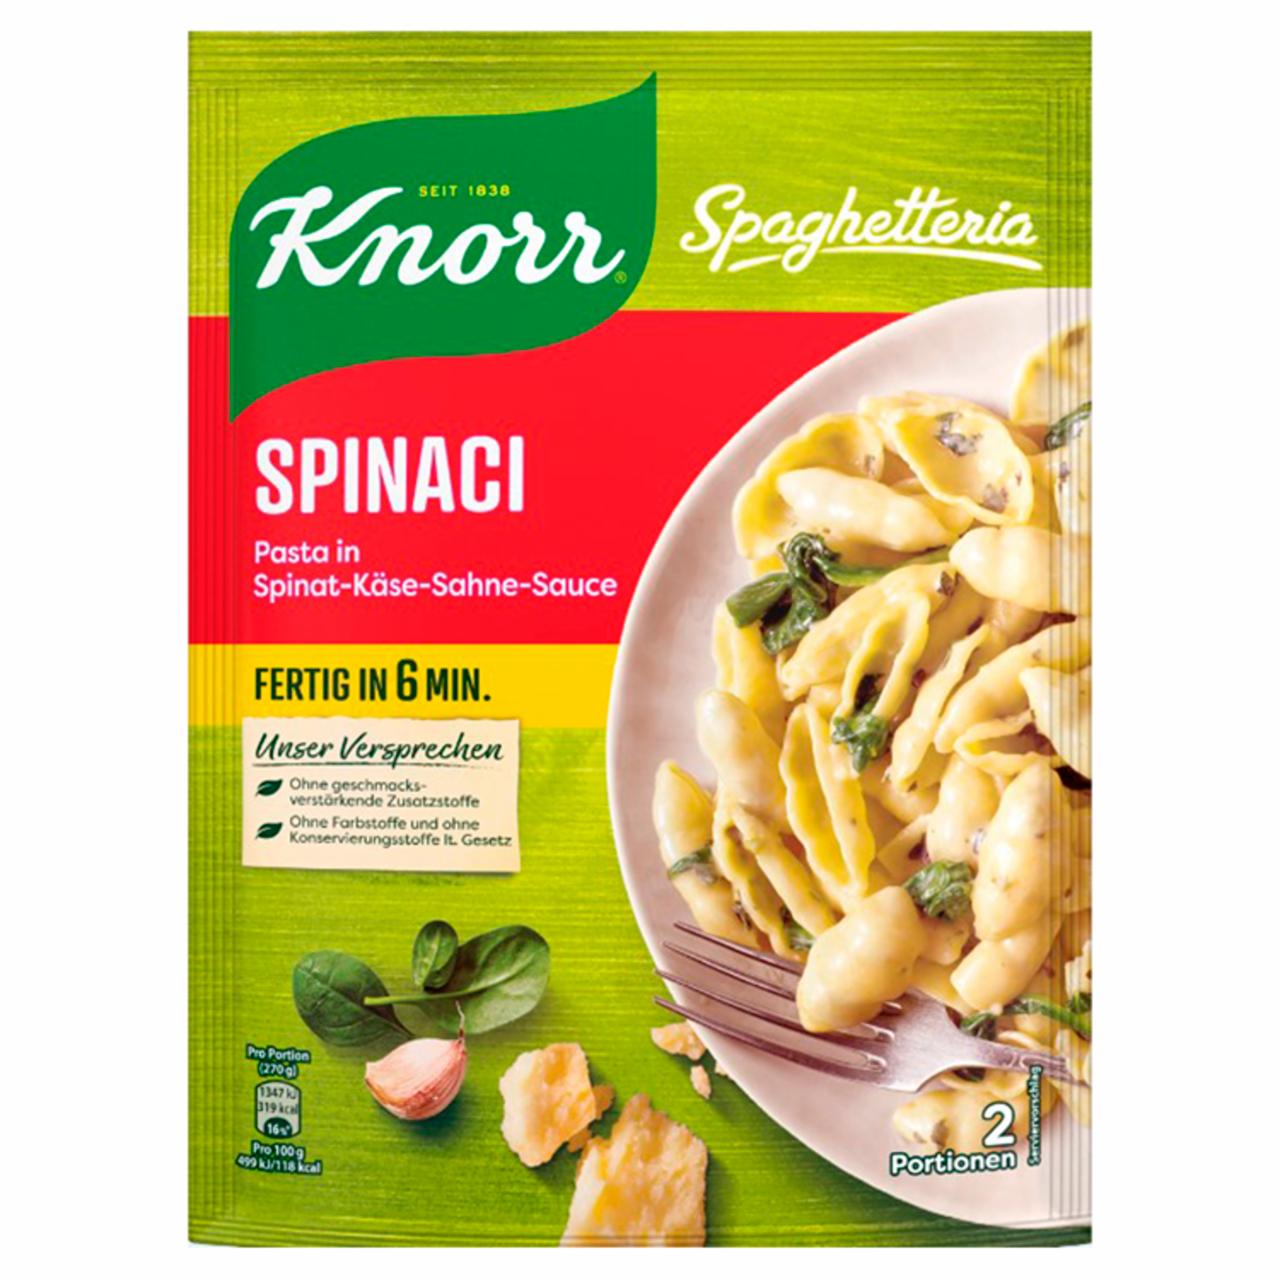 Képek - Spaghetteria tészta spenótos-sajtos-tejszínes szószban Knorr